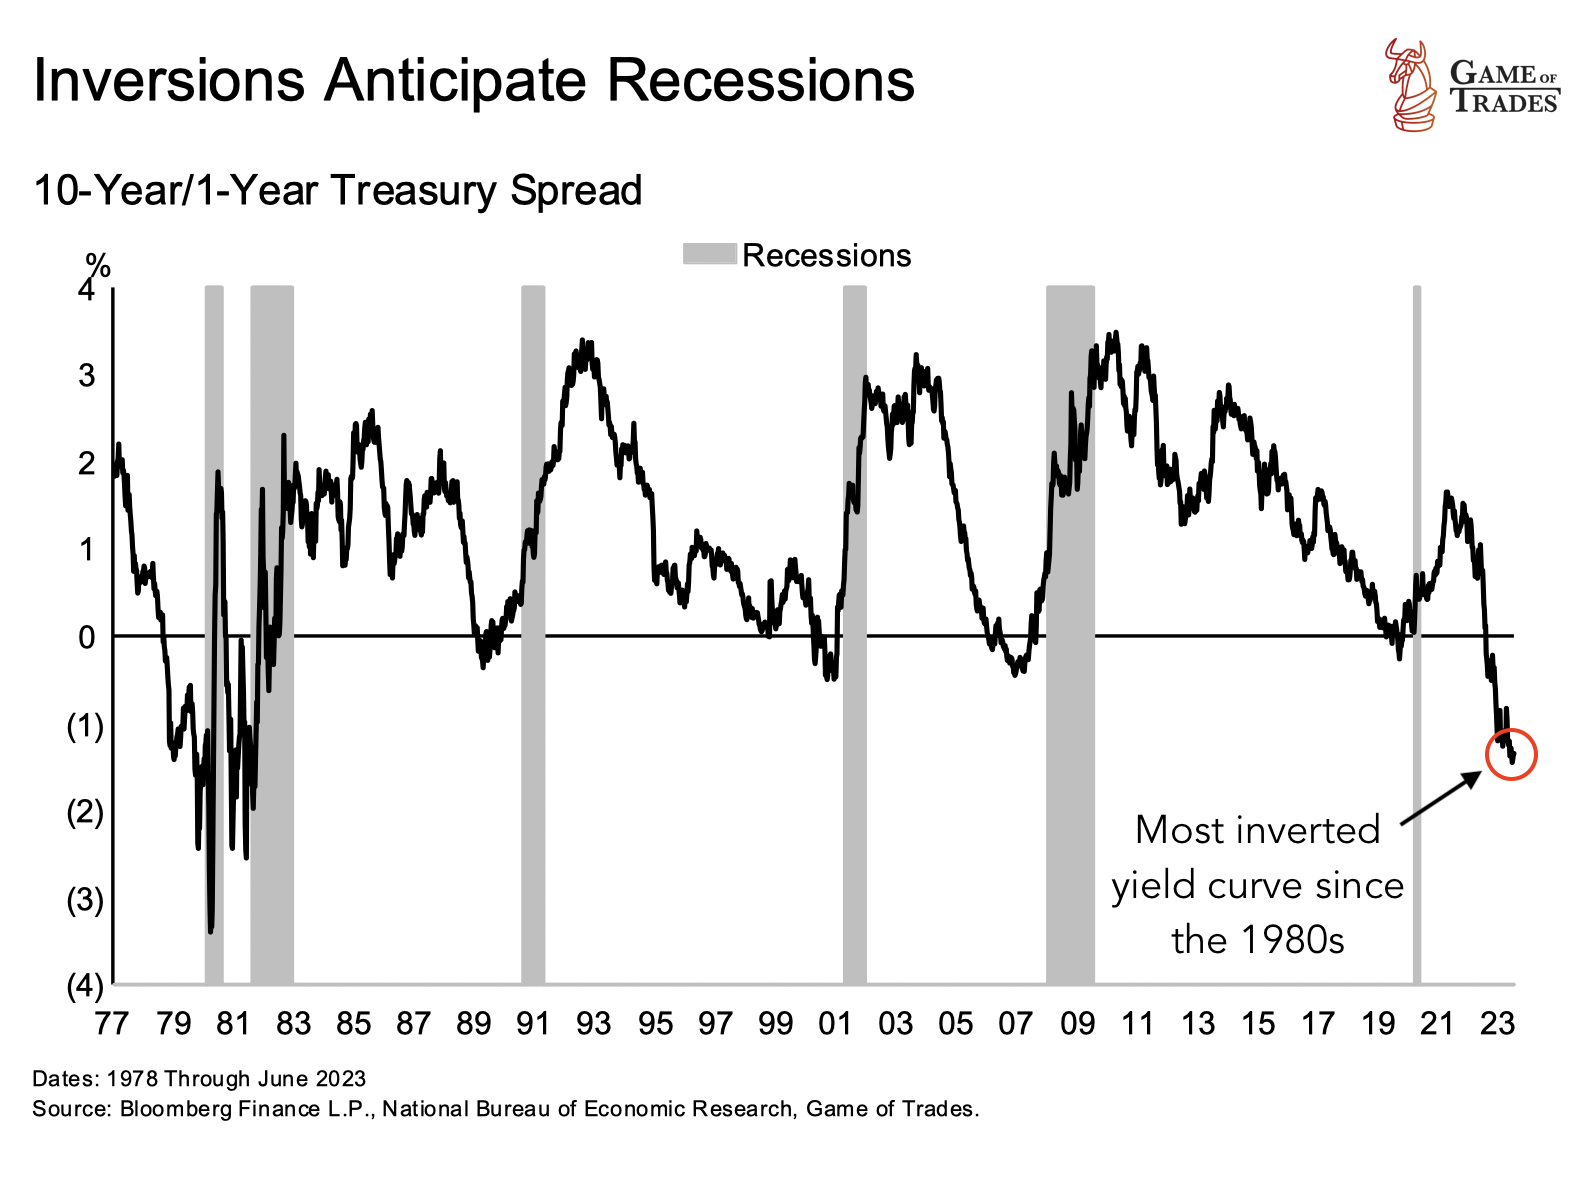 Inversions anticipate recession